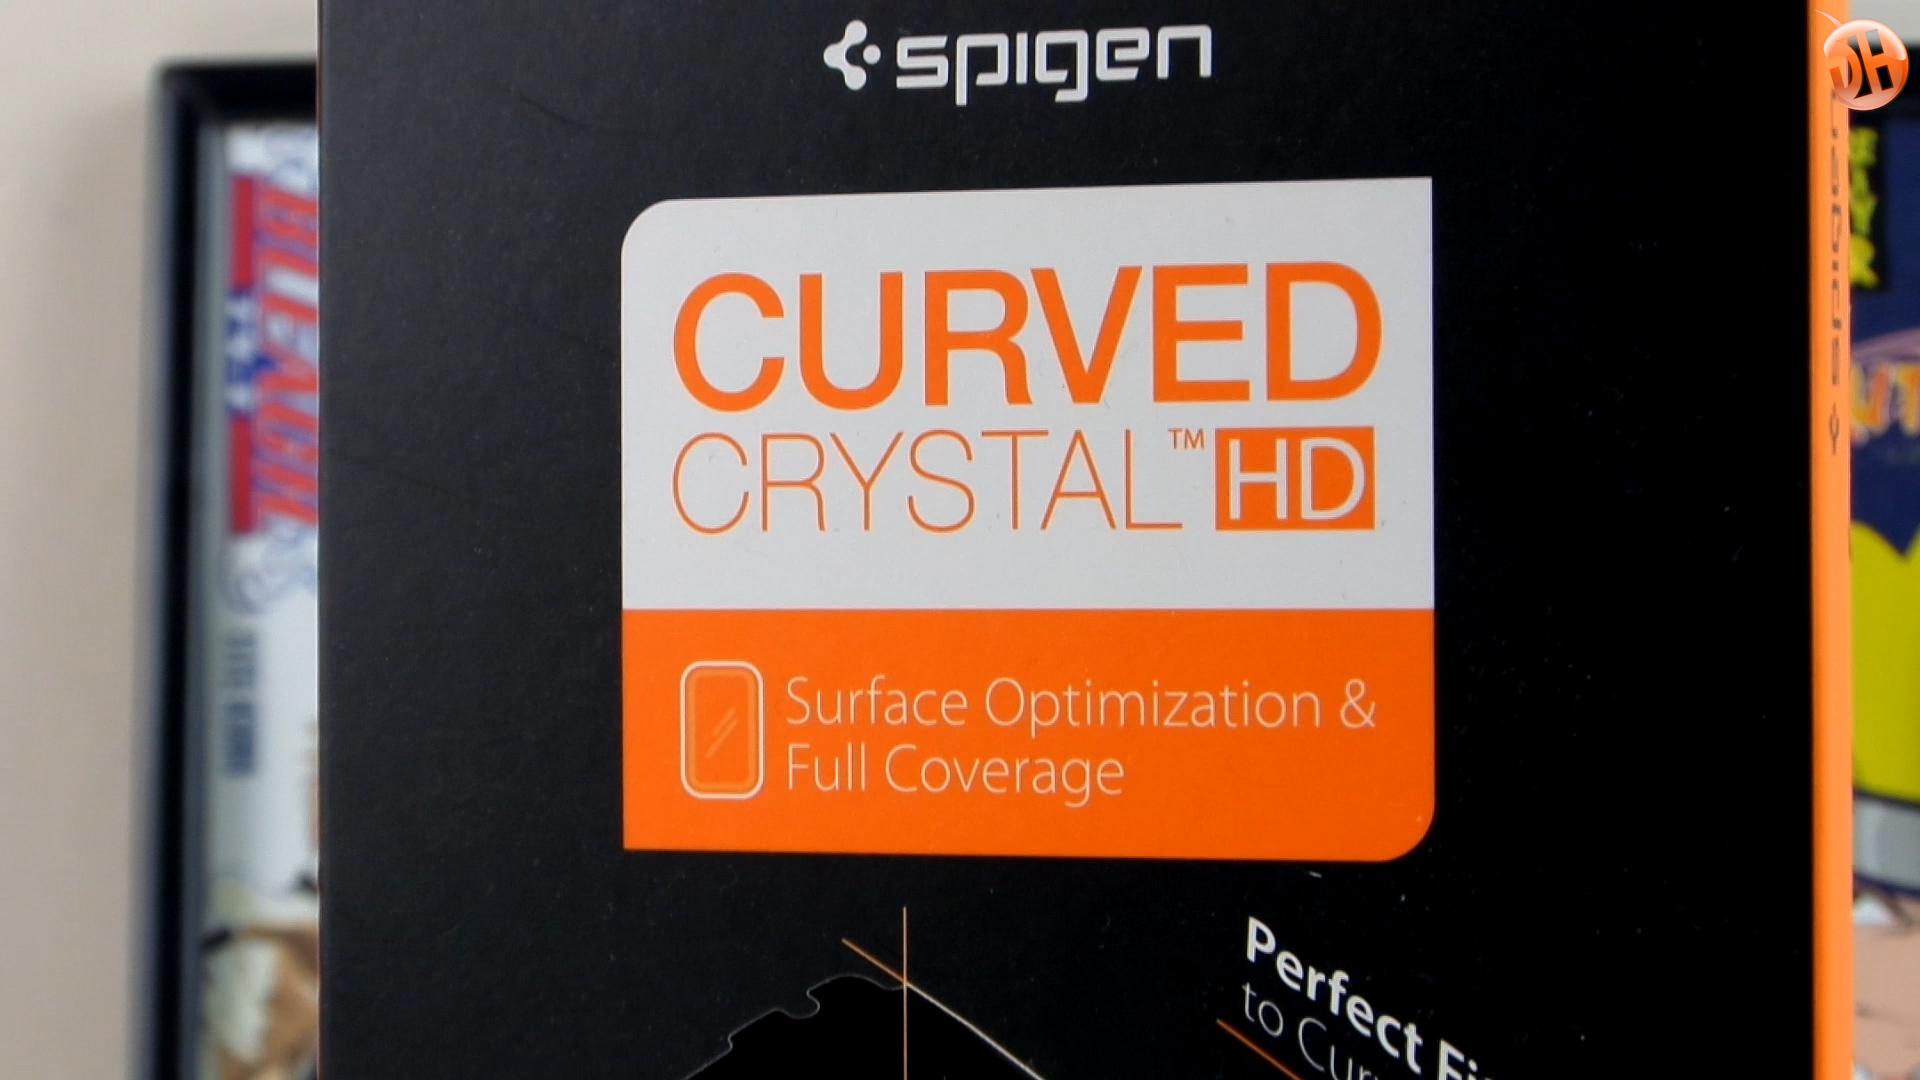 Spigen'in S7 Edge'e özel aksesuarlarını inceliyoruz